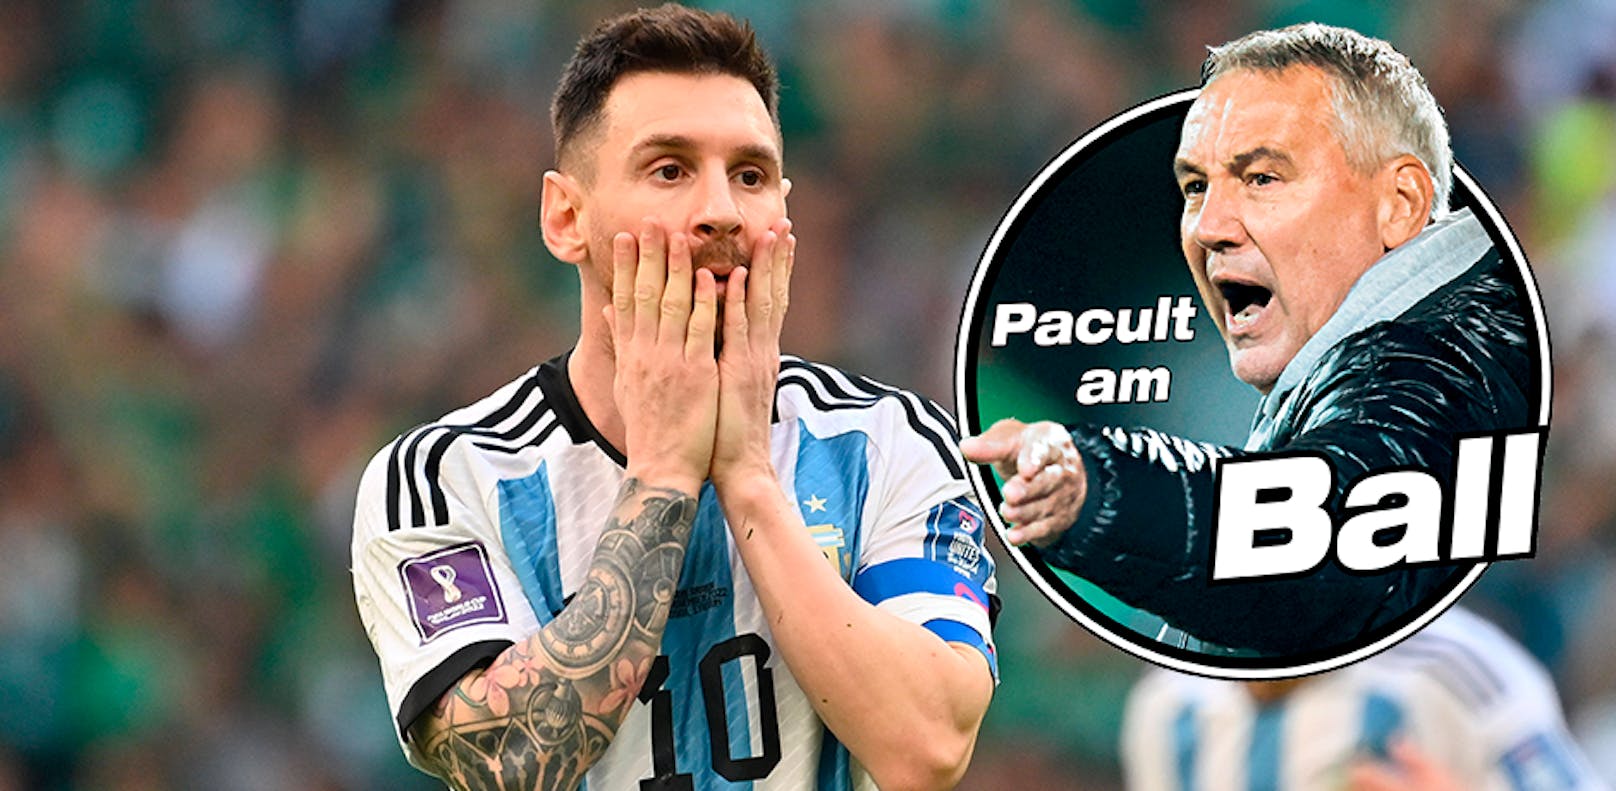 Pacult: "Umsonst griff sich Messi nicht auf den Muskel"